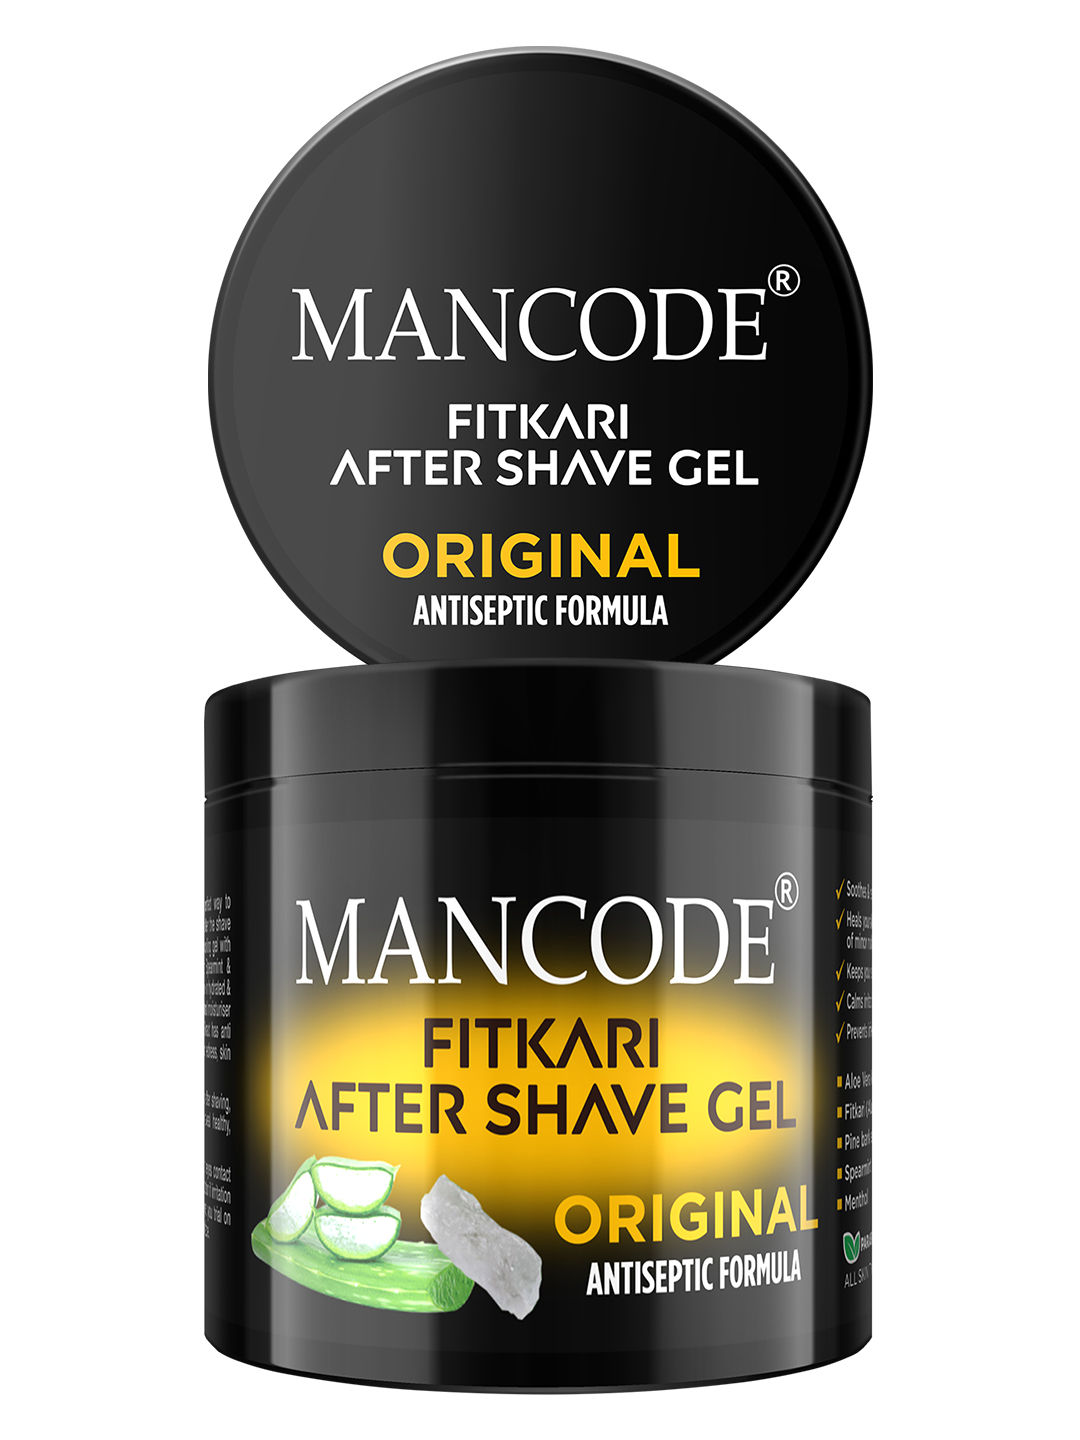 ManCode Fitkari After Shave Gel For Men Original Antiseptic Formula